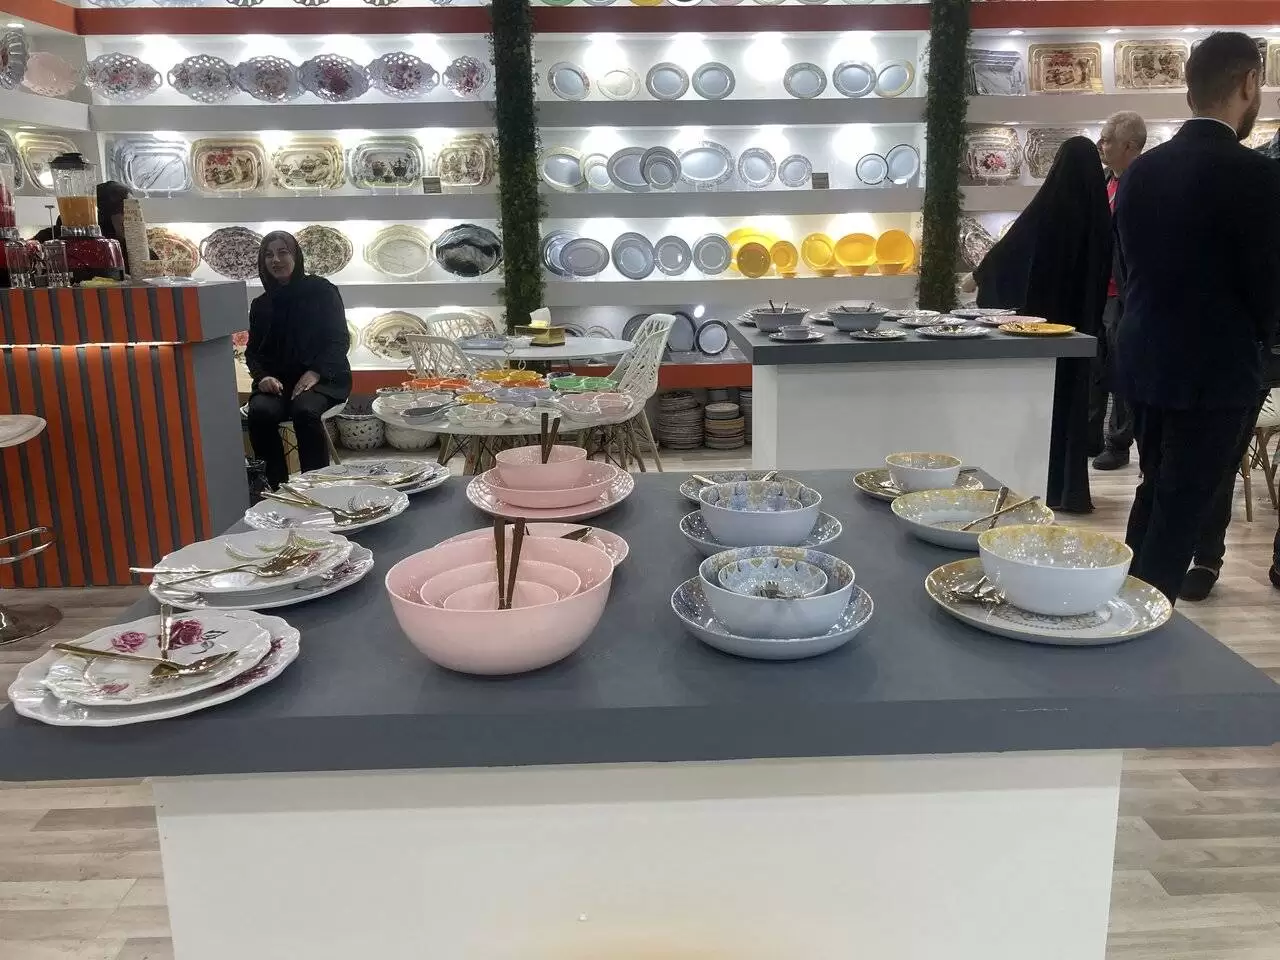 عجایب صادراتی ایران در نمایشگاه اکسپو  -  از میز خاتم با استخوان شتر تا ملامین های مادربزرگی